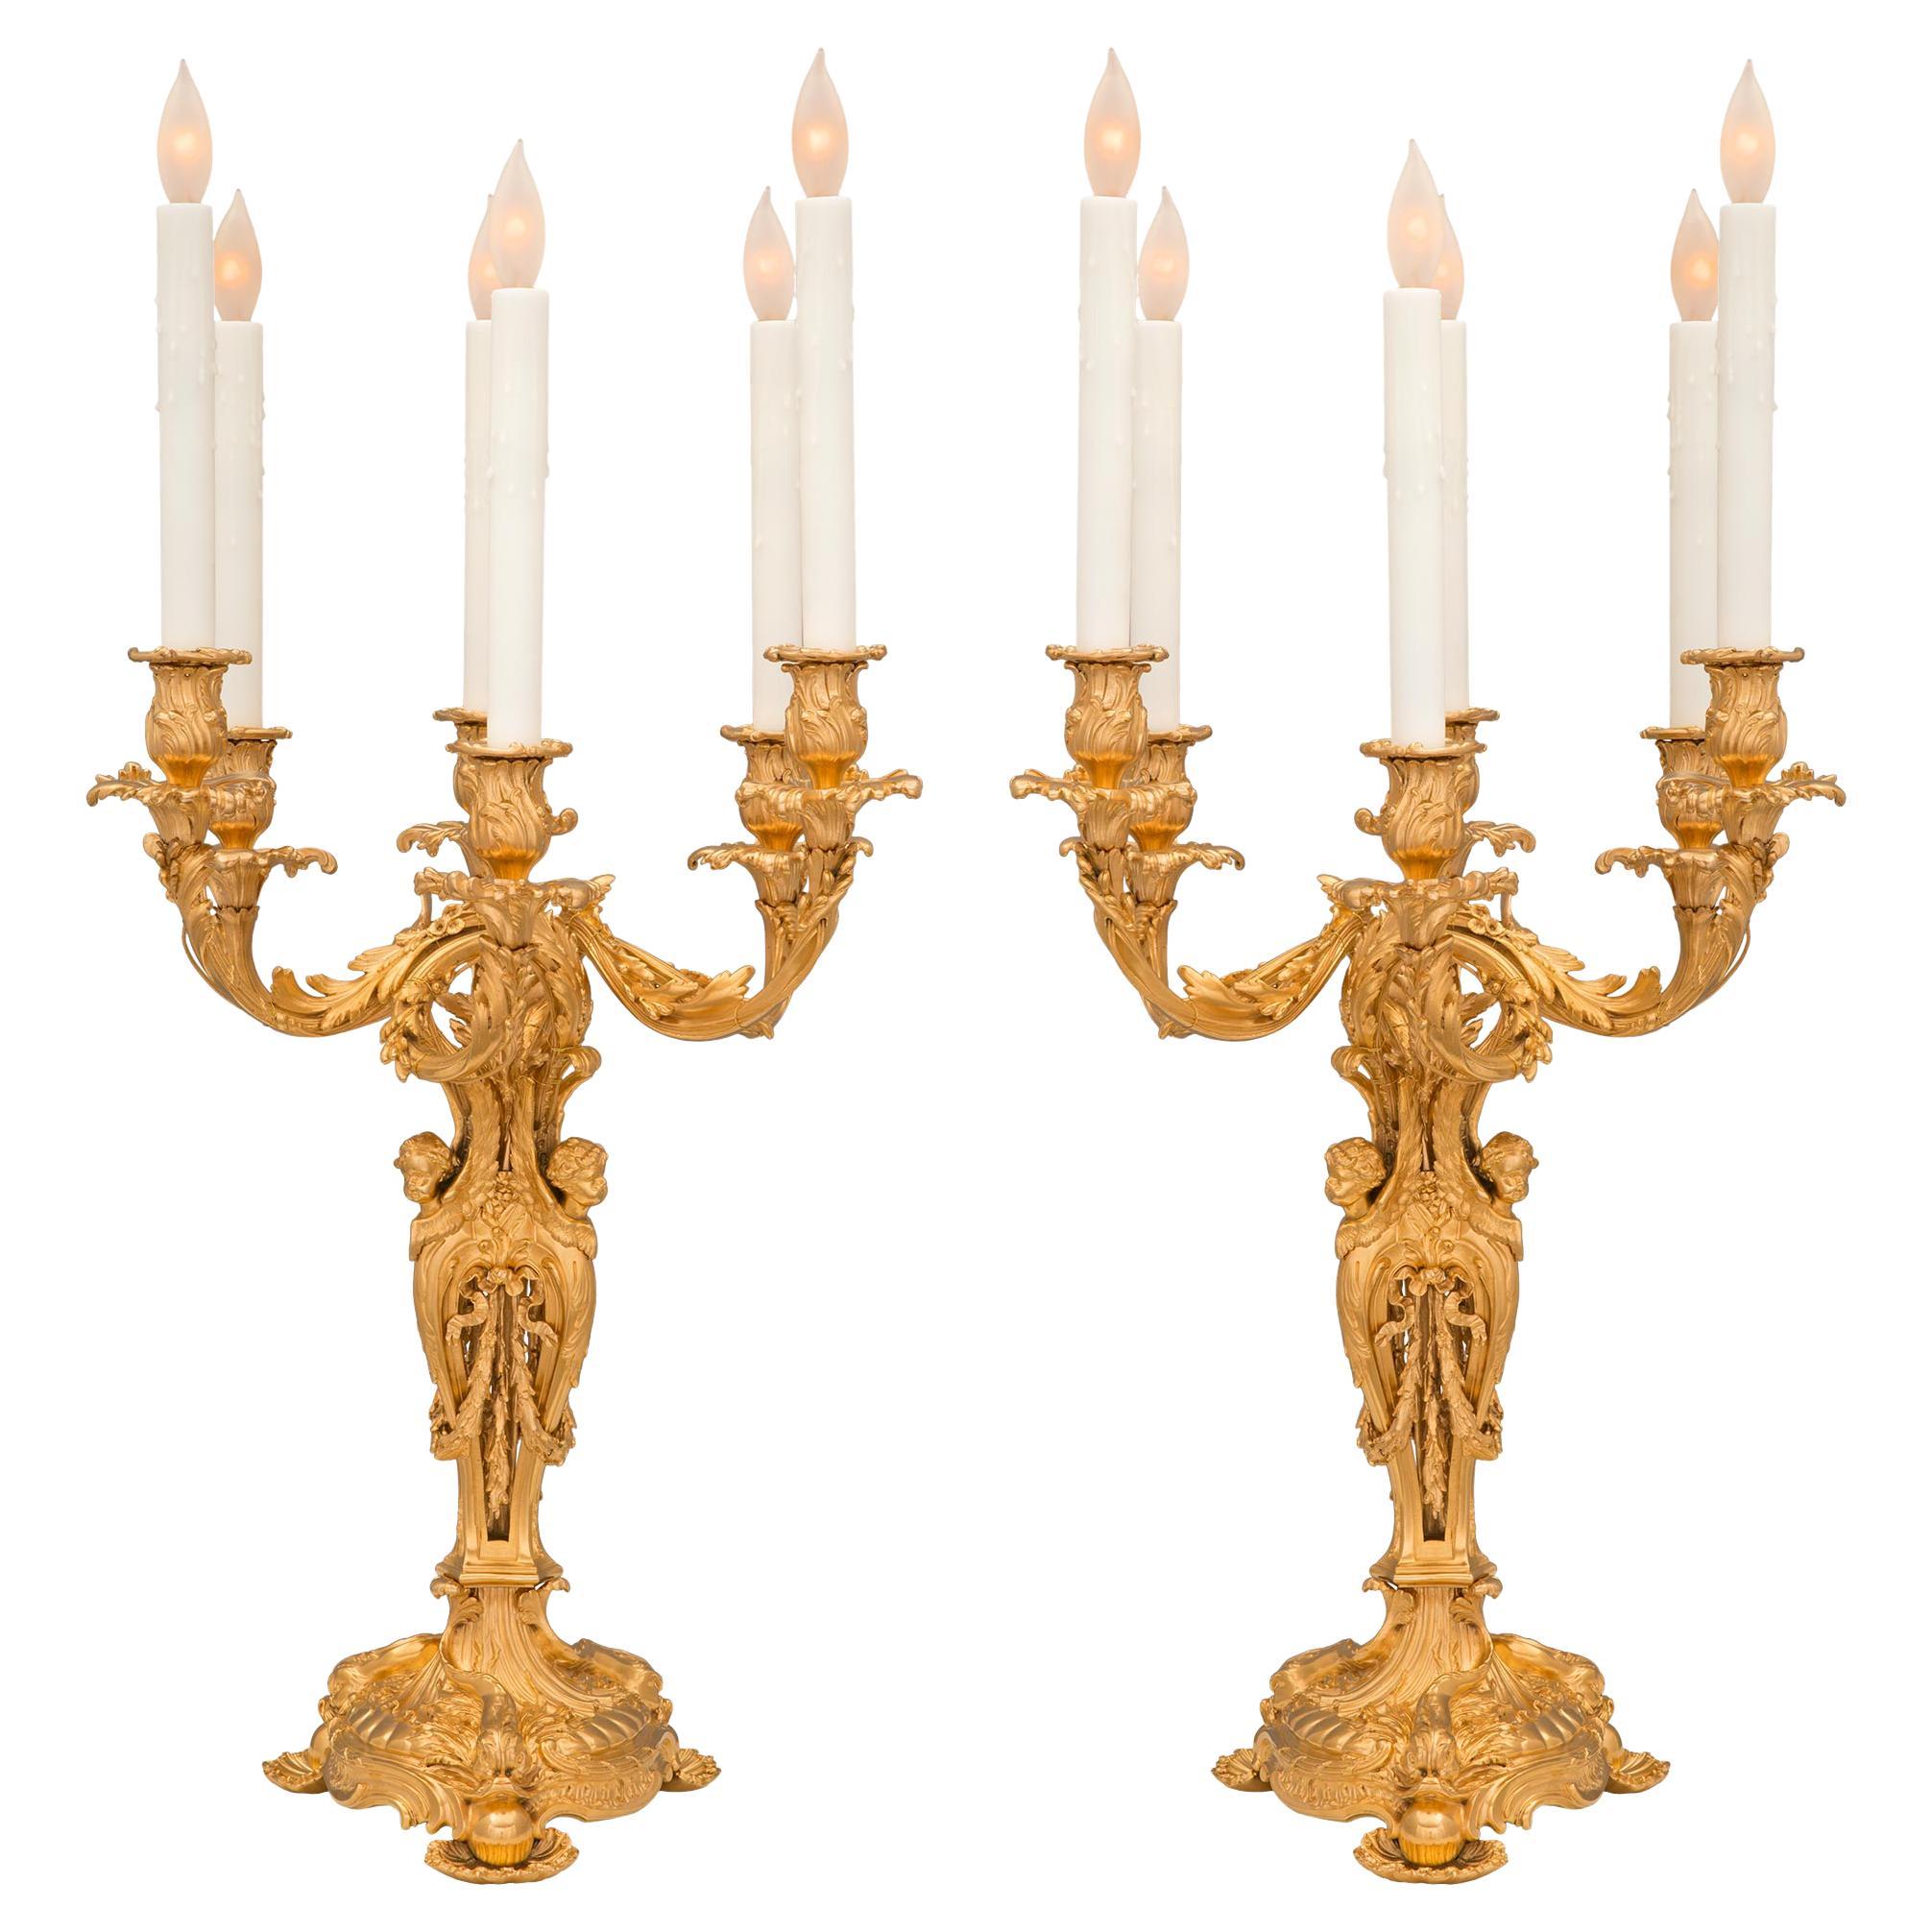 Une paire exceptionnelle et de très haute qualité de lampes candélabres en bronze doré de style Louis XV du 19ème siècle attribuées à François Linke. Chaque lampe à six bras est surélevée par une étonnante base circulaire feuillagée et